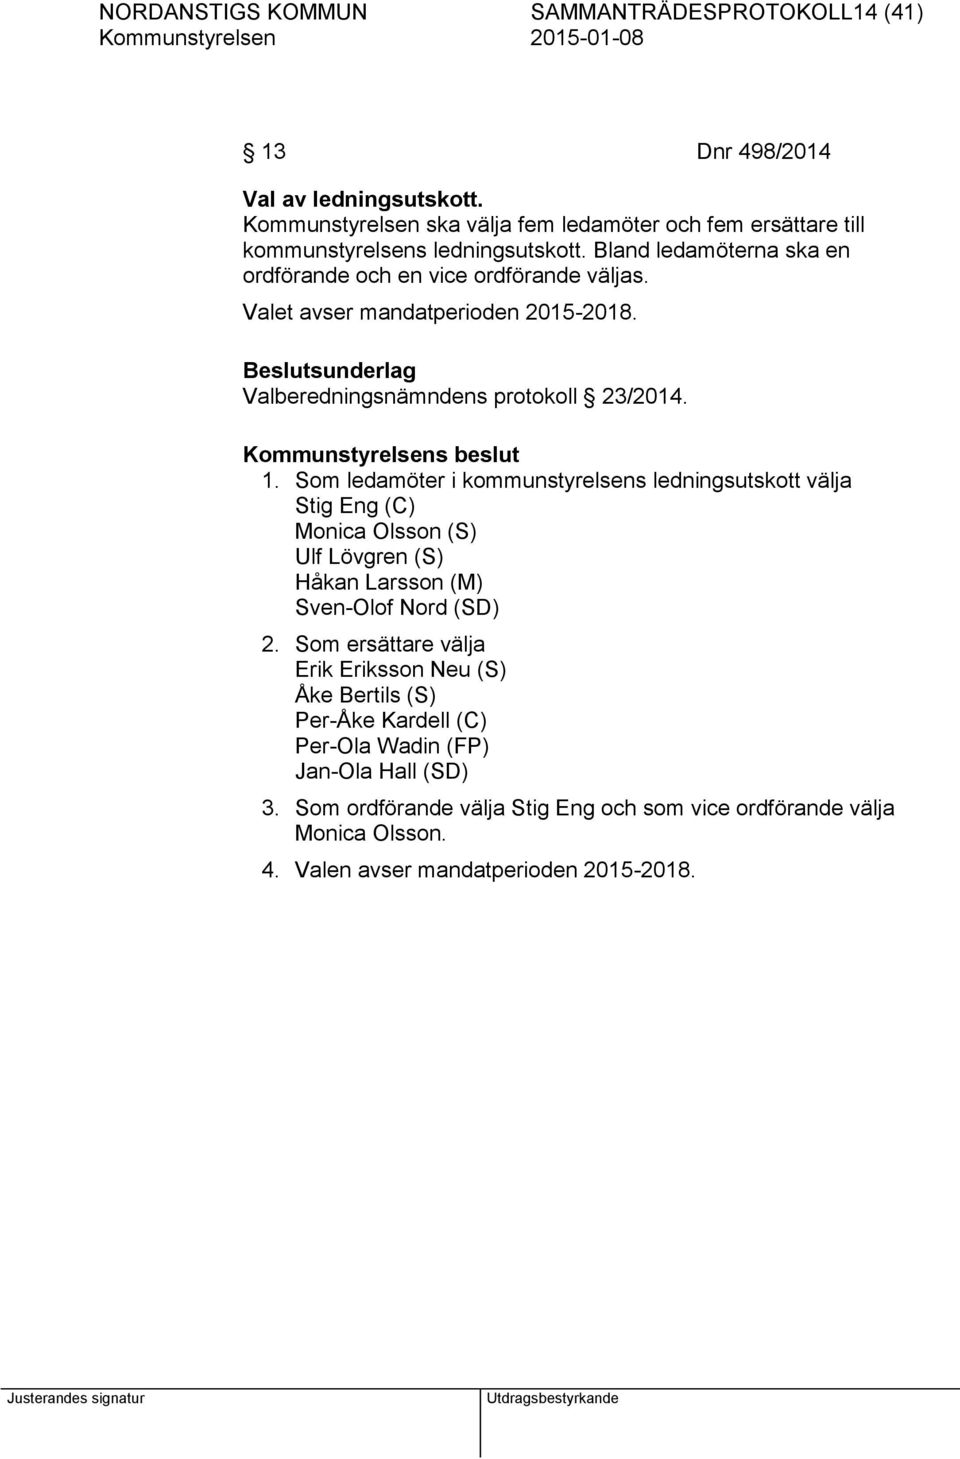 Valet avser mandatperioden 2015-2018. Valberedningsnämndens protokoll 23/2014. 1.